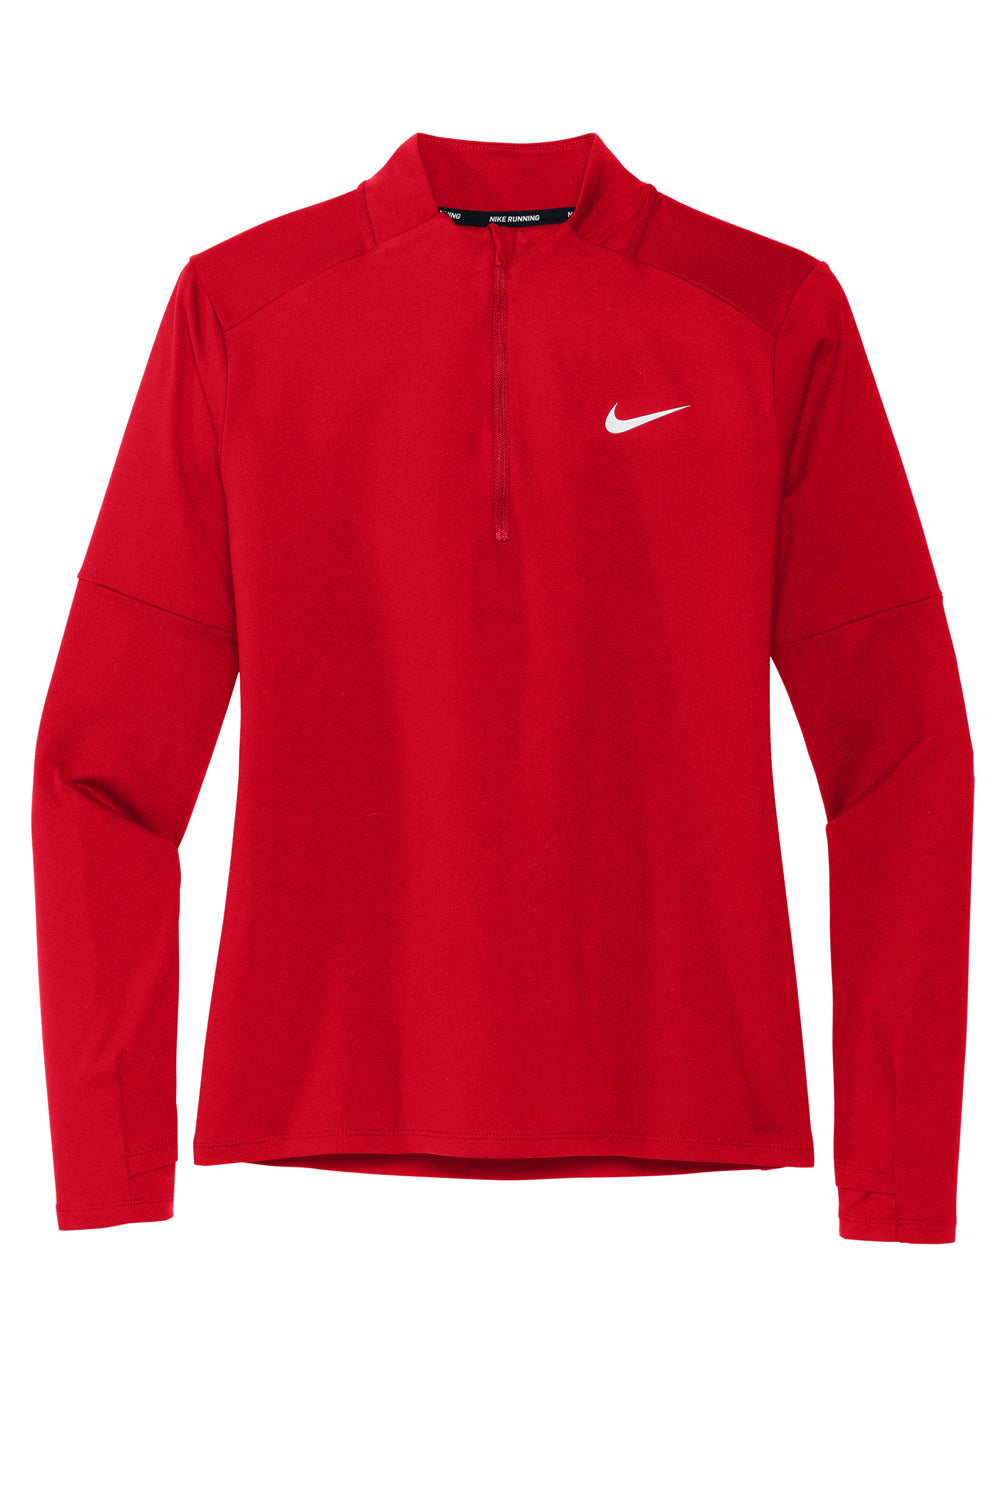 Nike NKDH4951 Womens Element Dri-Fit Moisture Wicking 1/4 Zip Sweatshirt Scarlet Red Flat Front